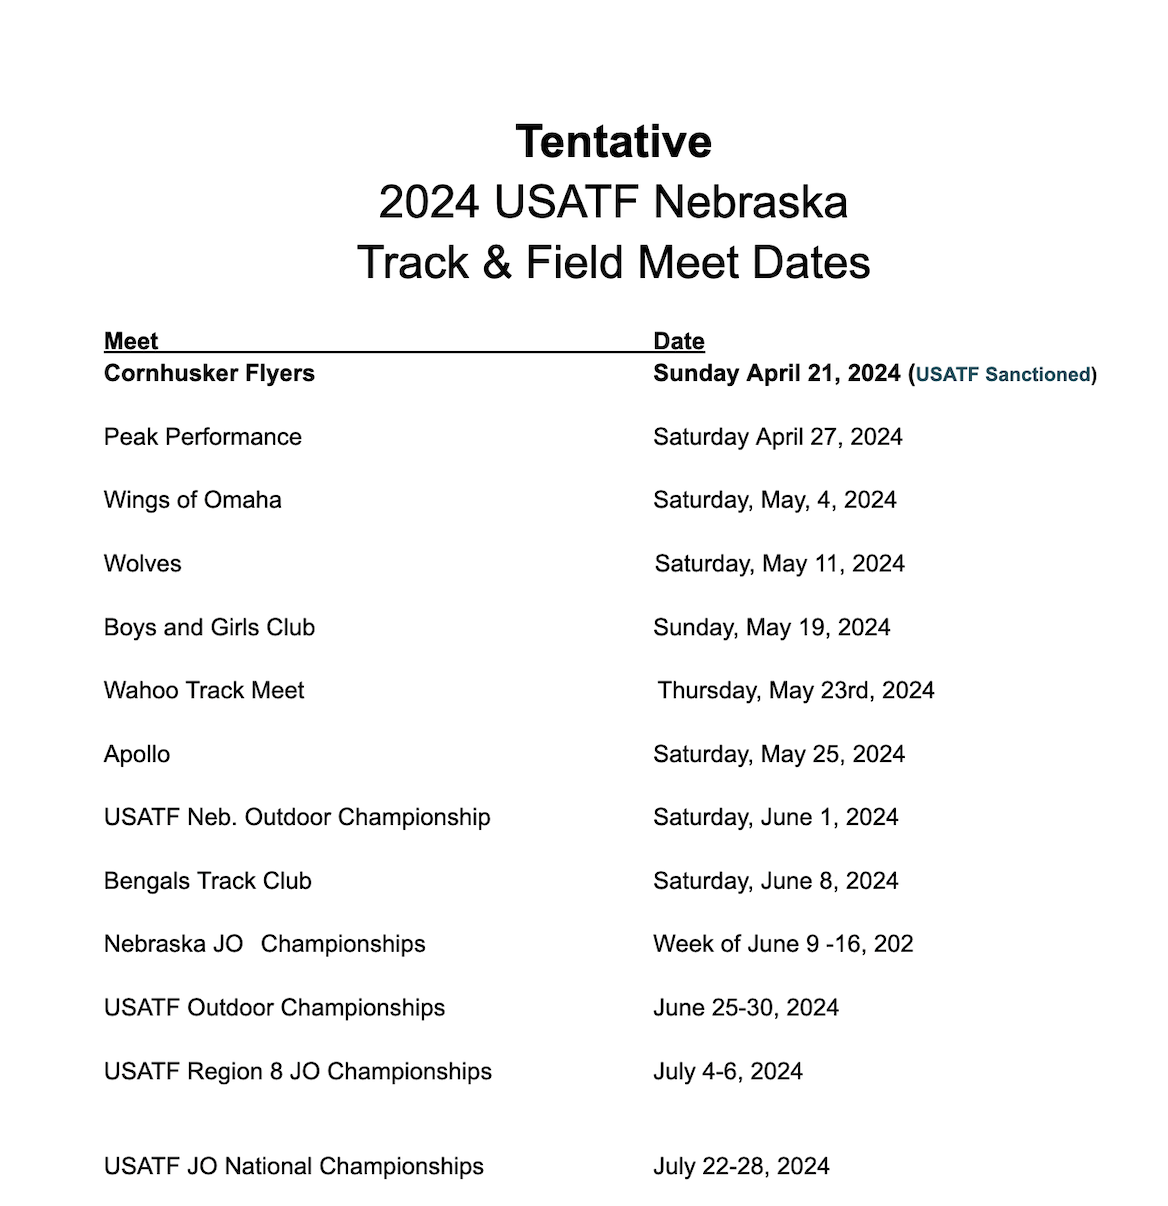 Tentative 2024 Track Schedule